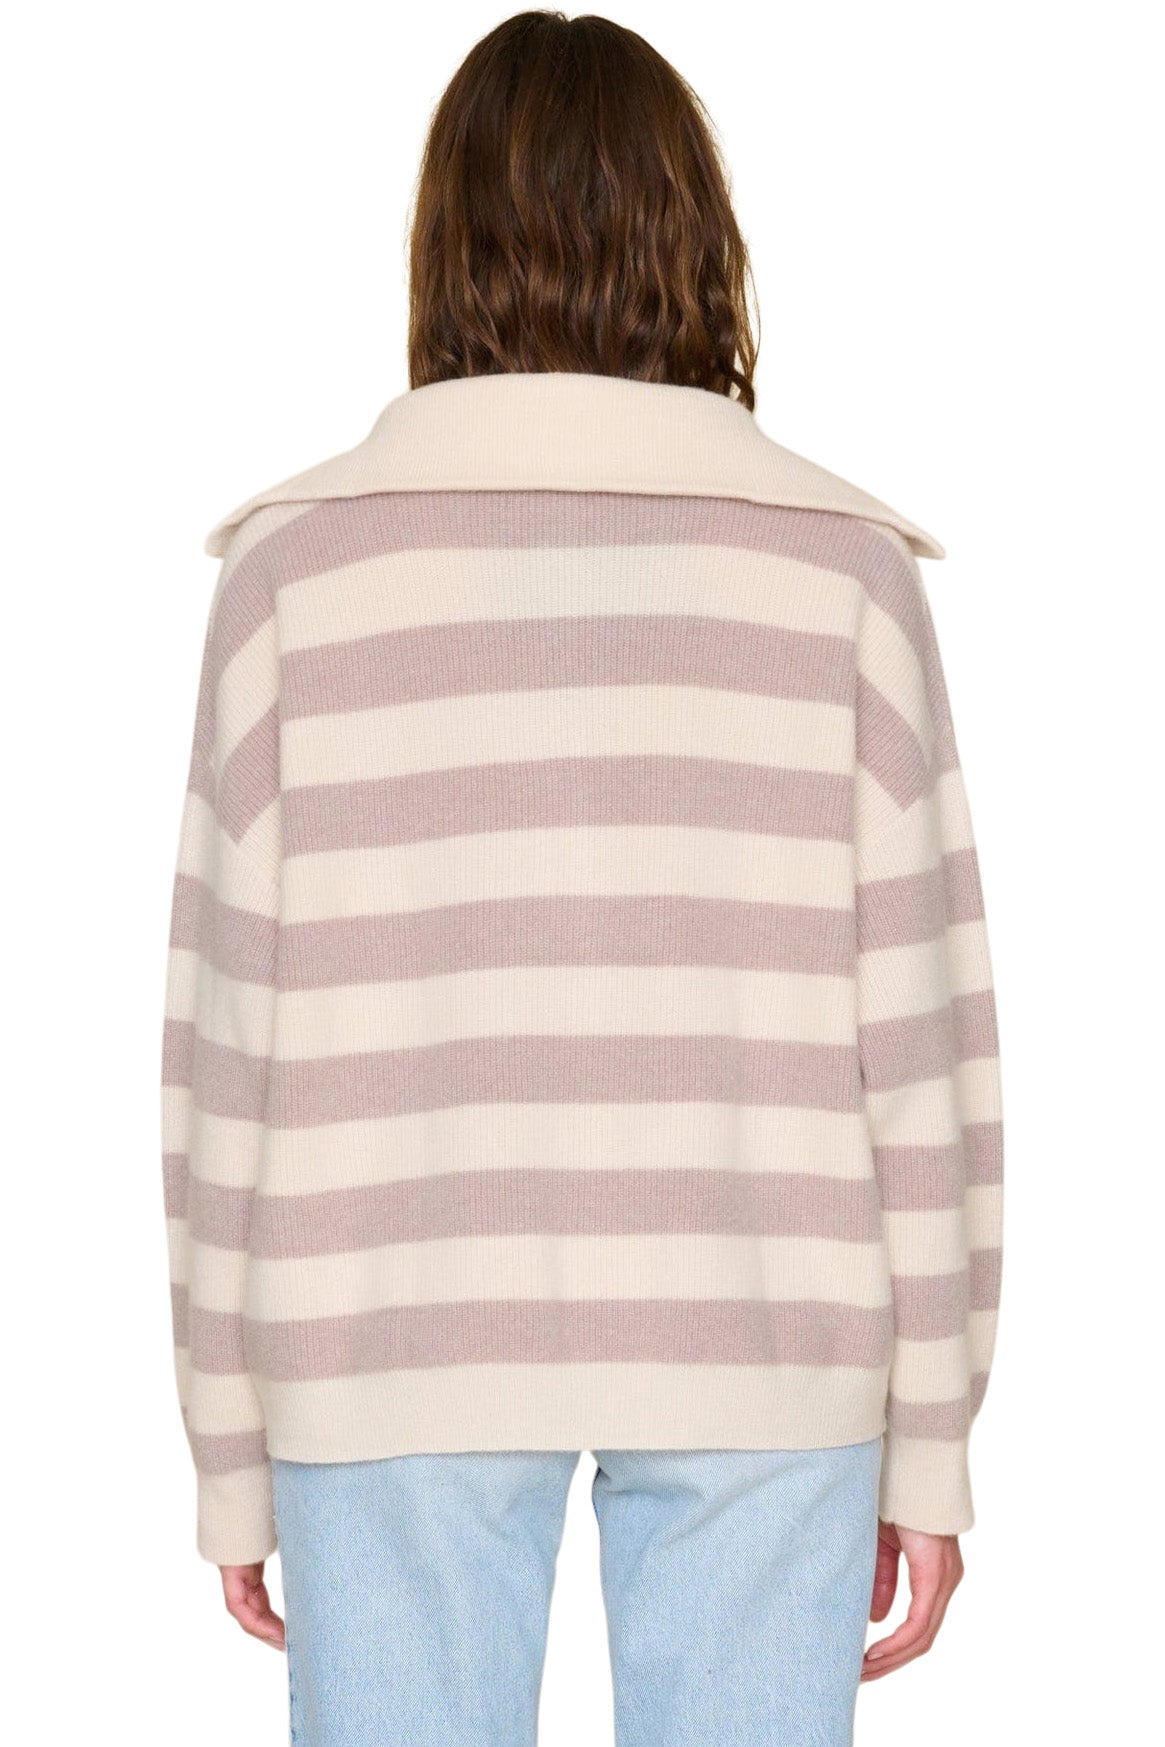 Xirena Rafferty Cashmere Sweater in Vanilla Mauve